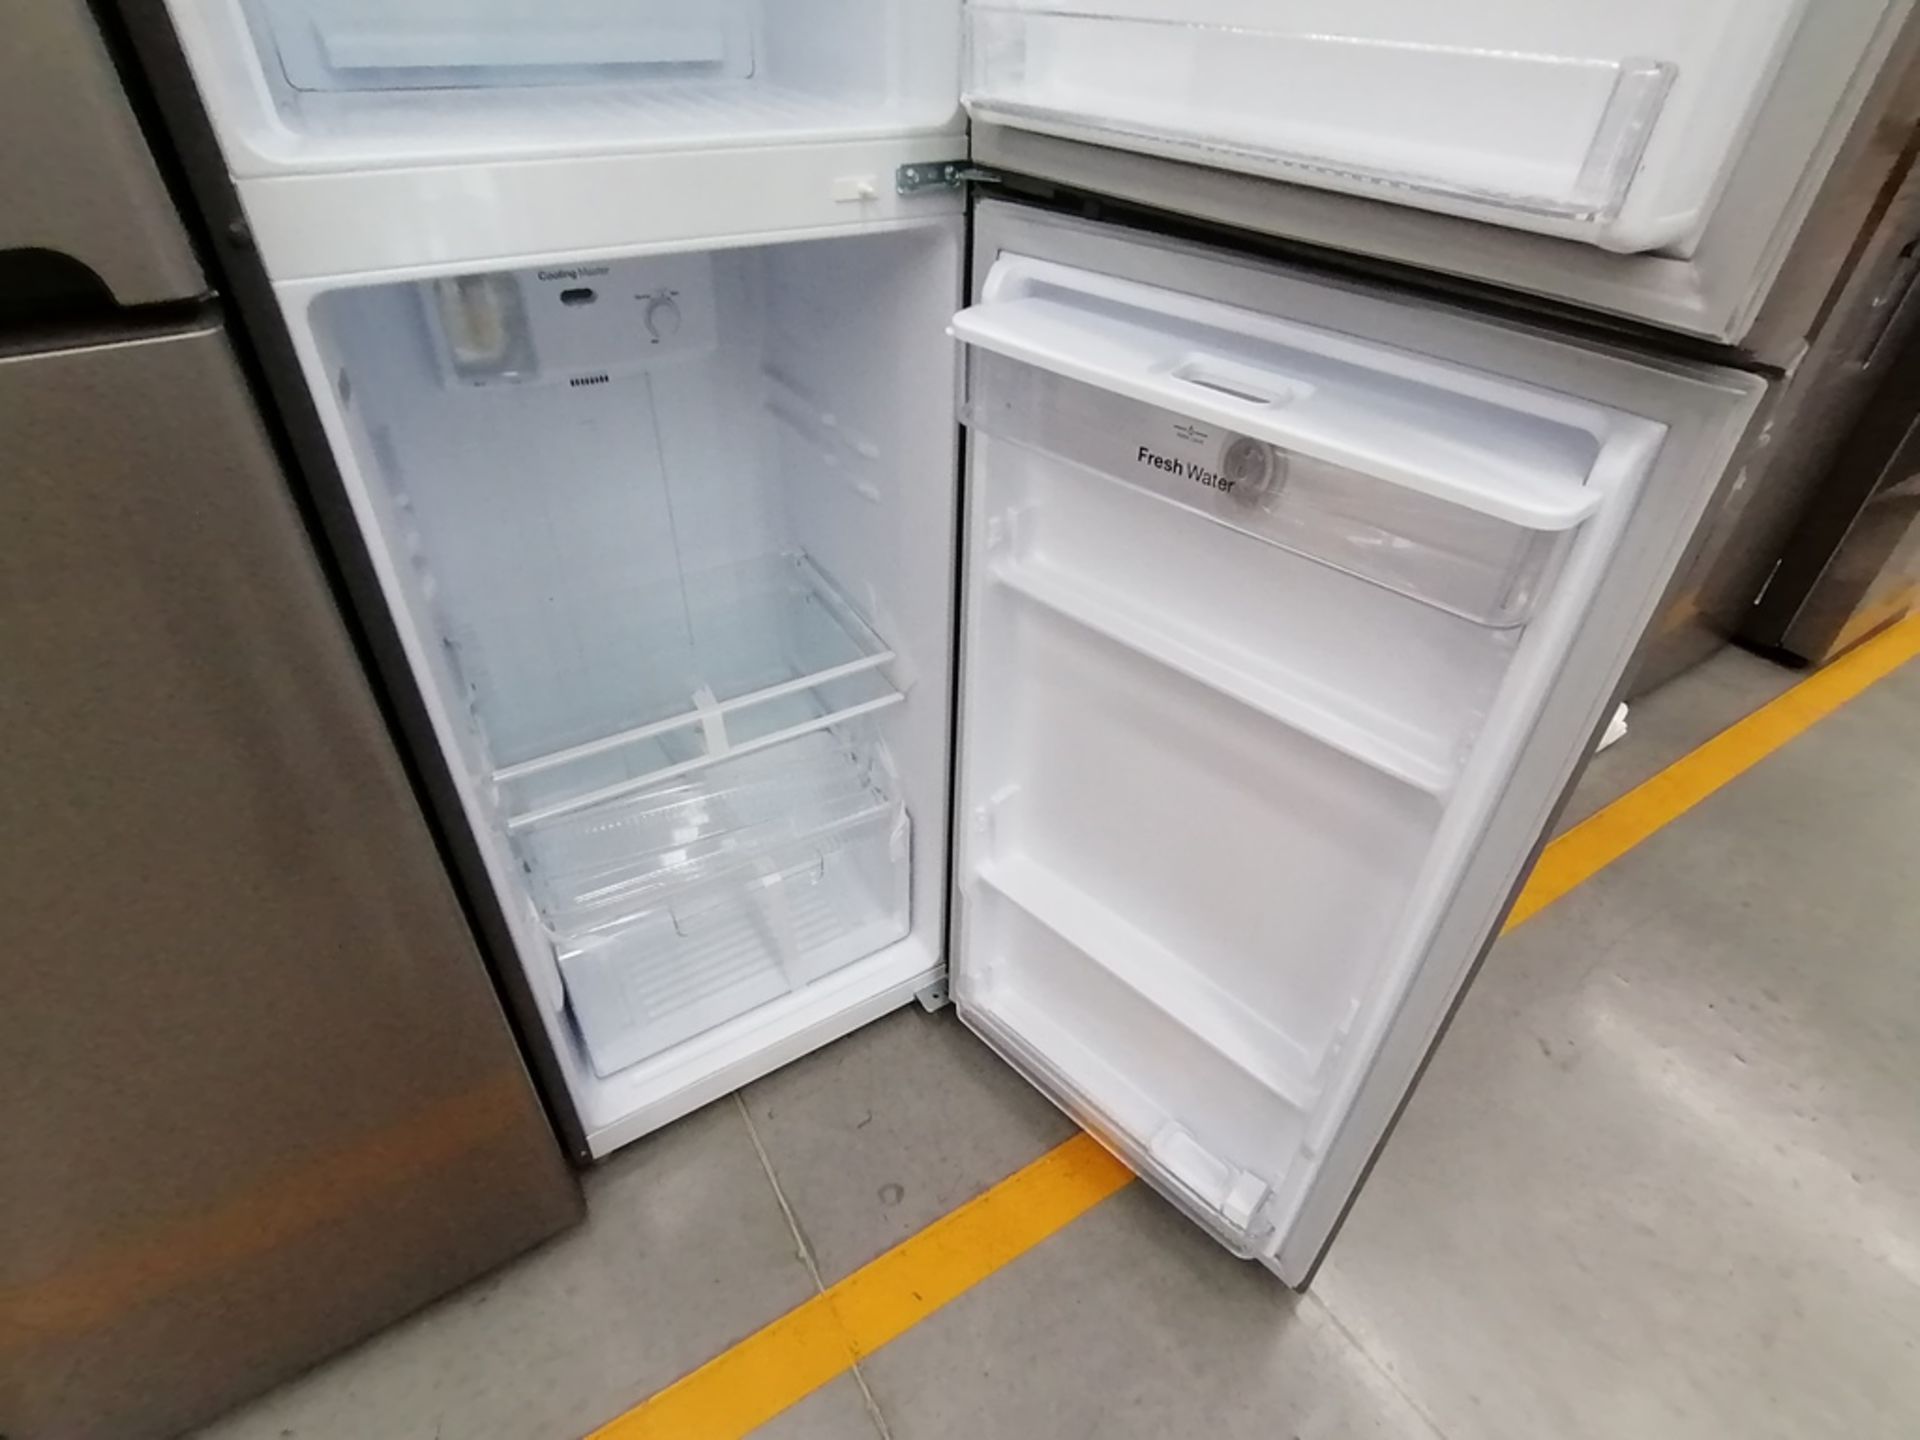 Lote de 2 refrigeradores incluye: 1 Refrigerador, Marca Winia, Modelo DFR25210GN, Serie MR219N11602 - Image 12 of 15